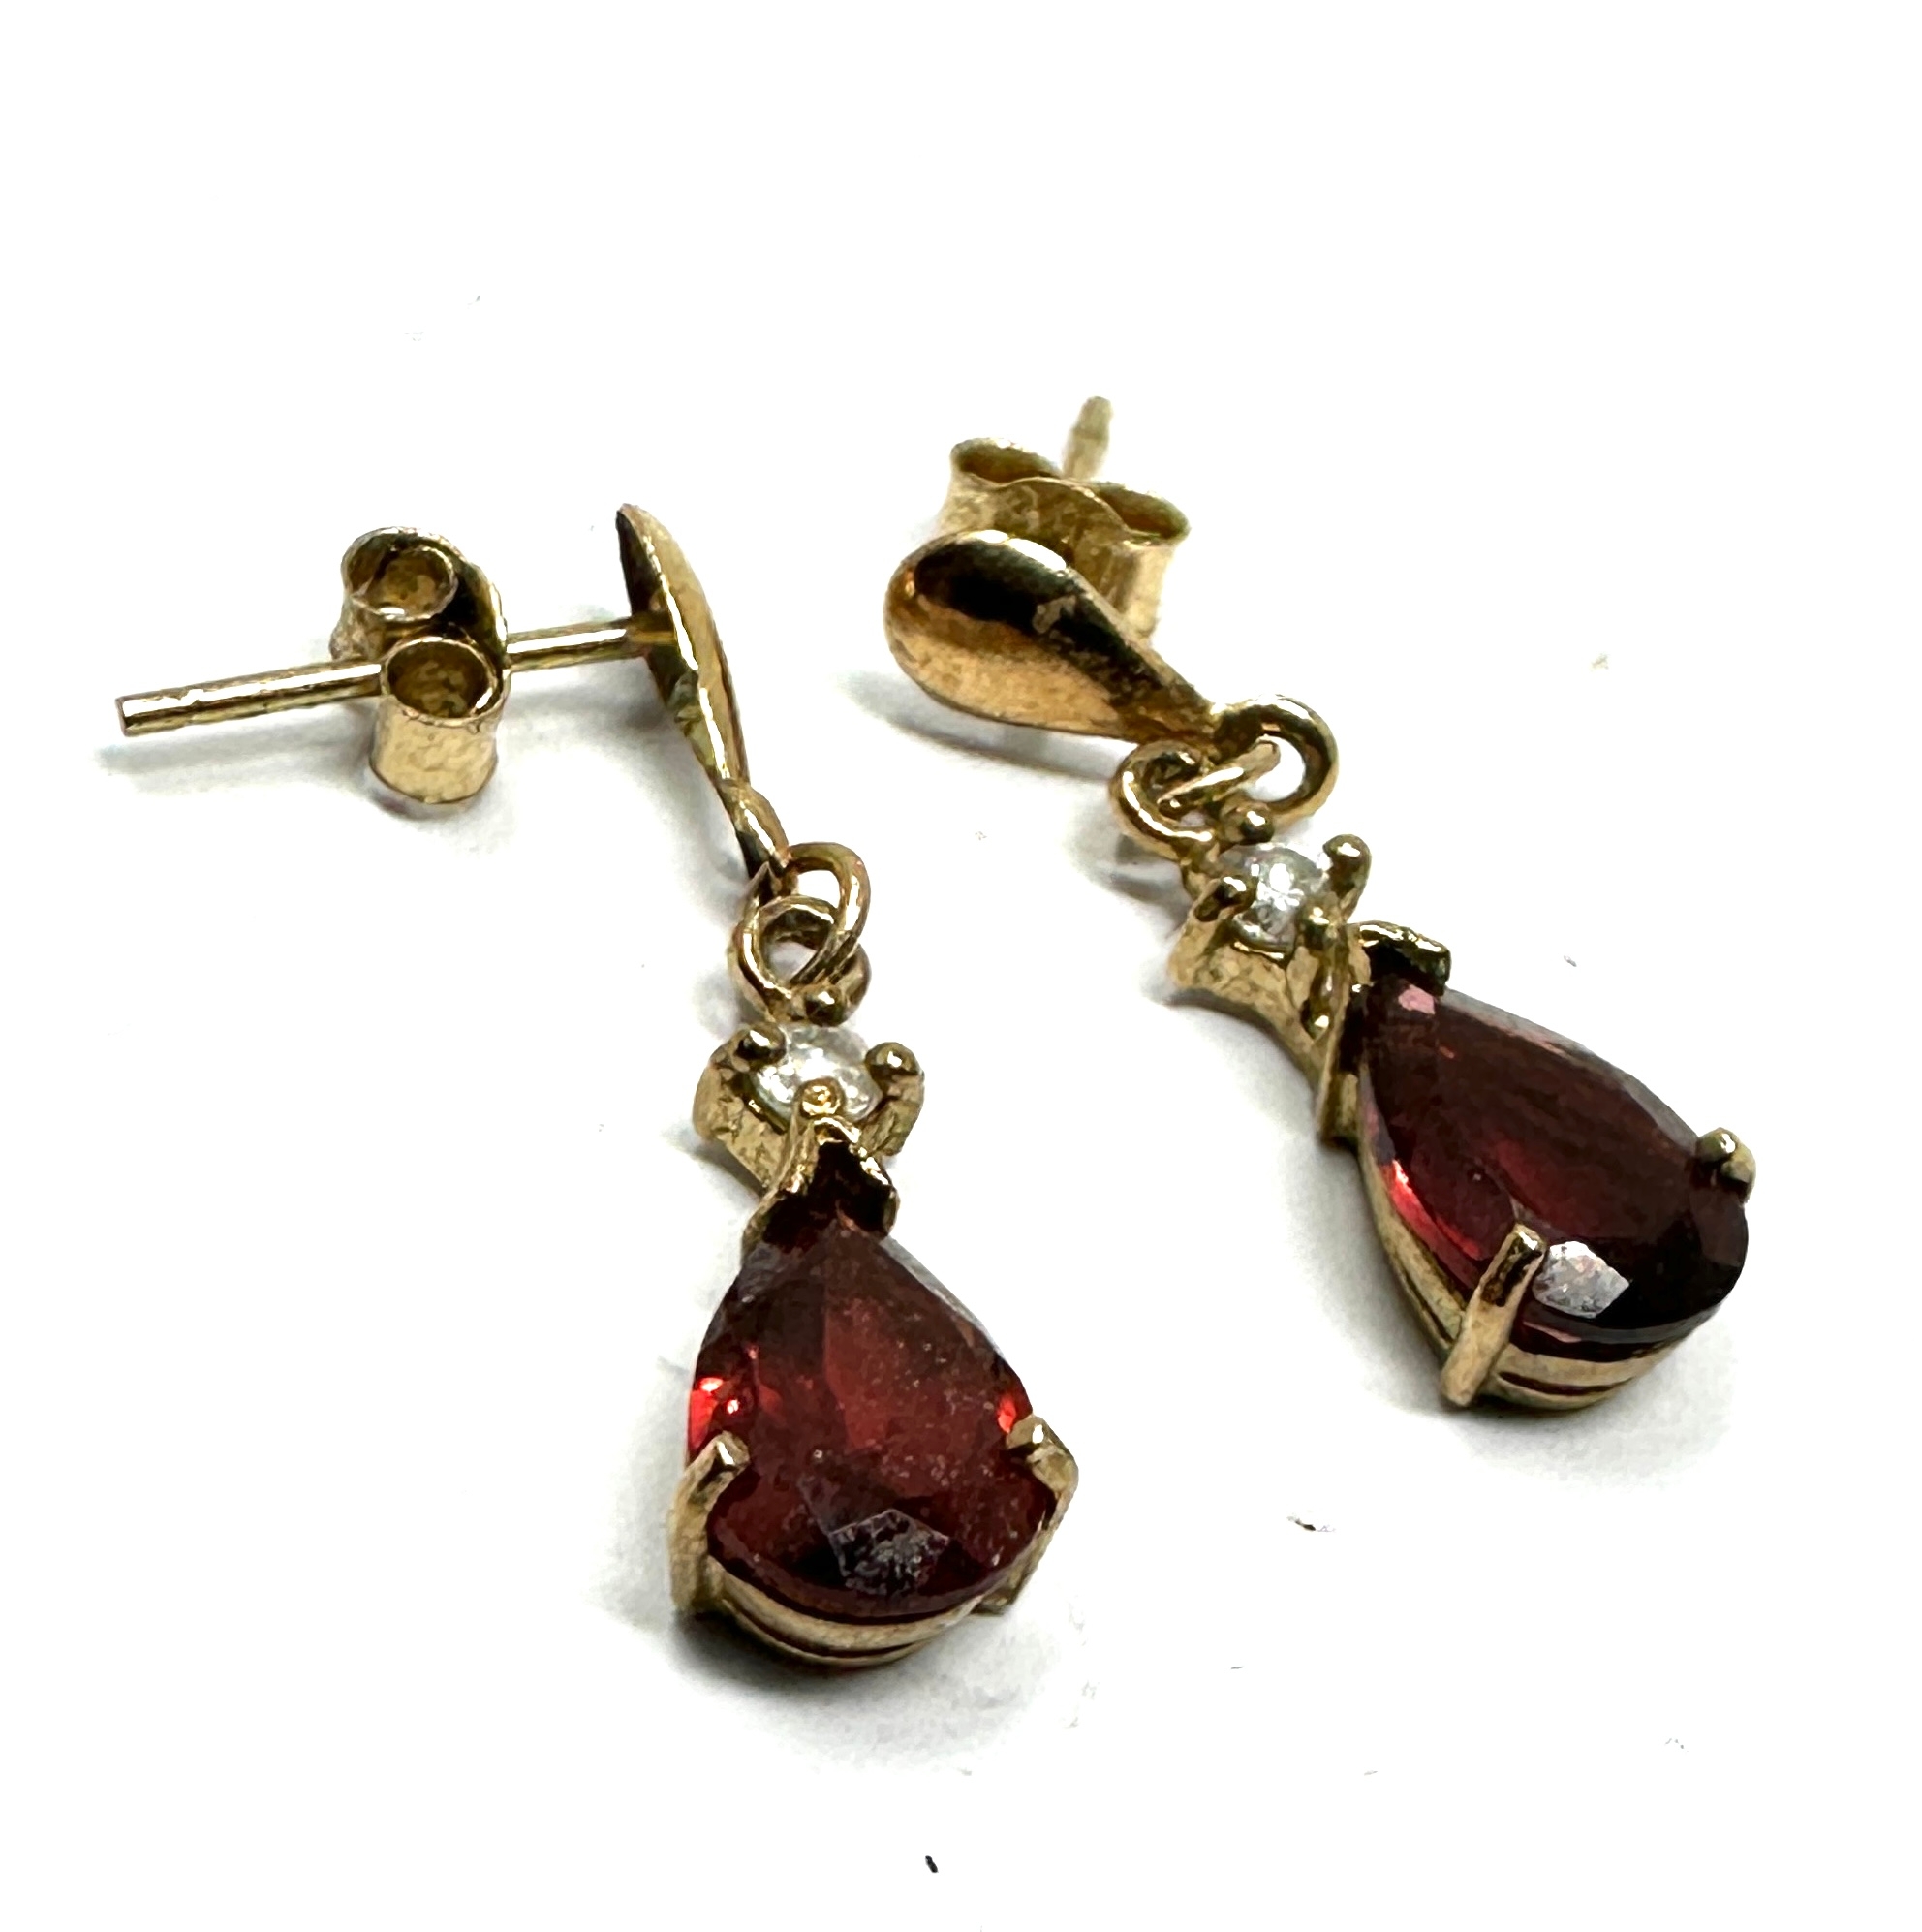 9ct gold garnet earrings weight 1.2g